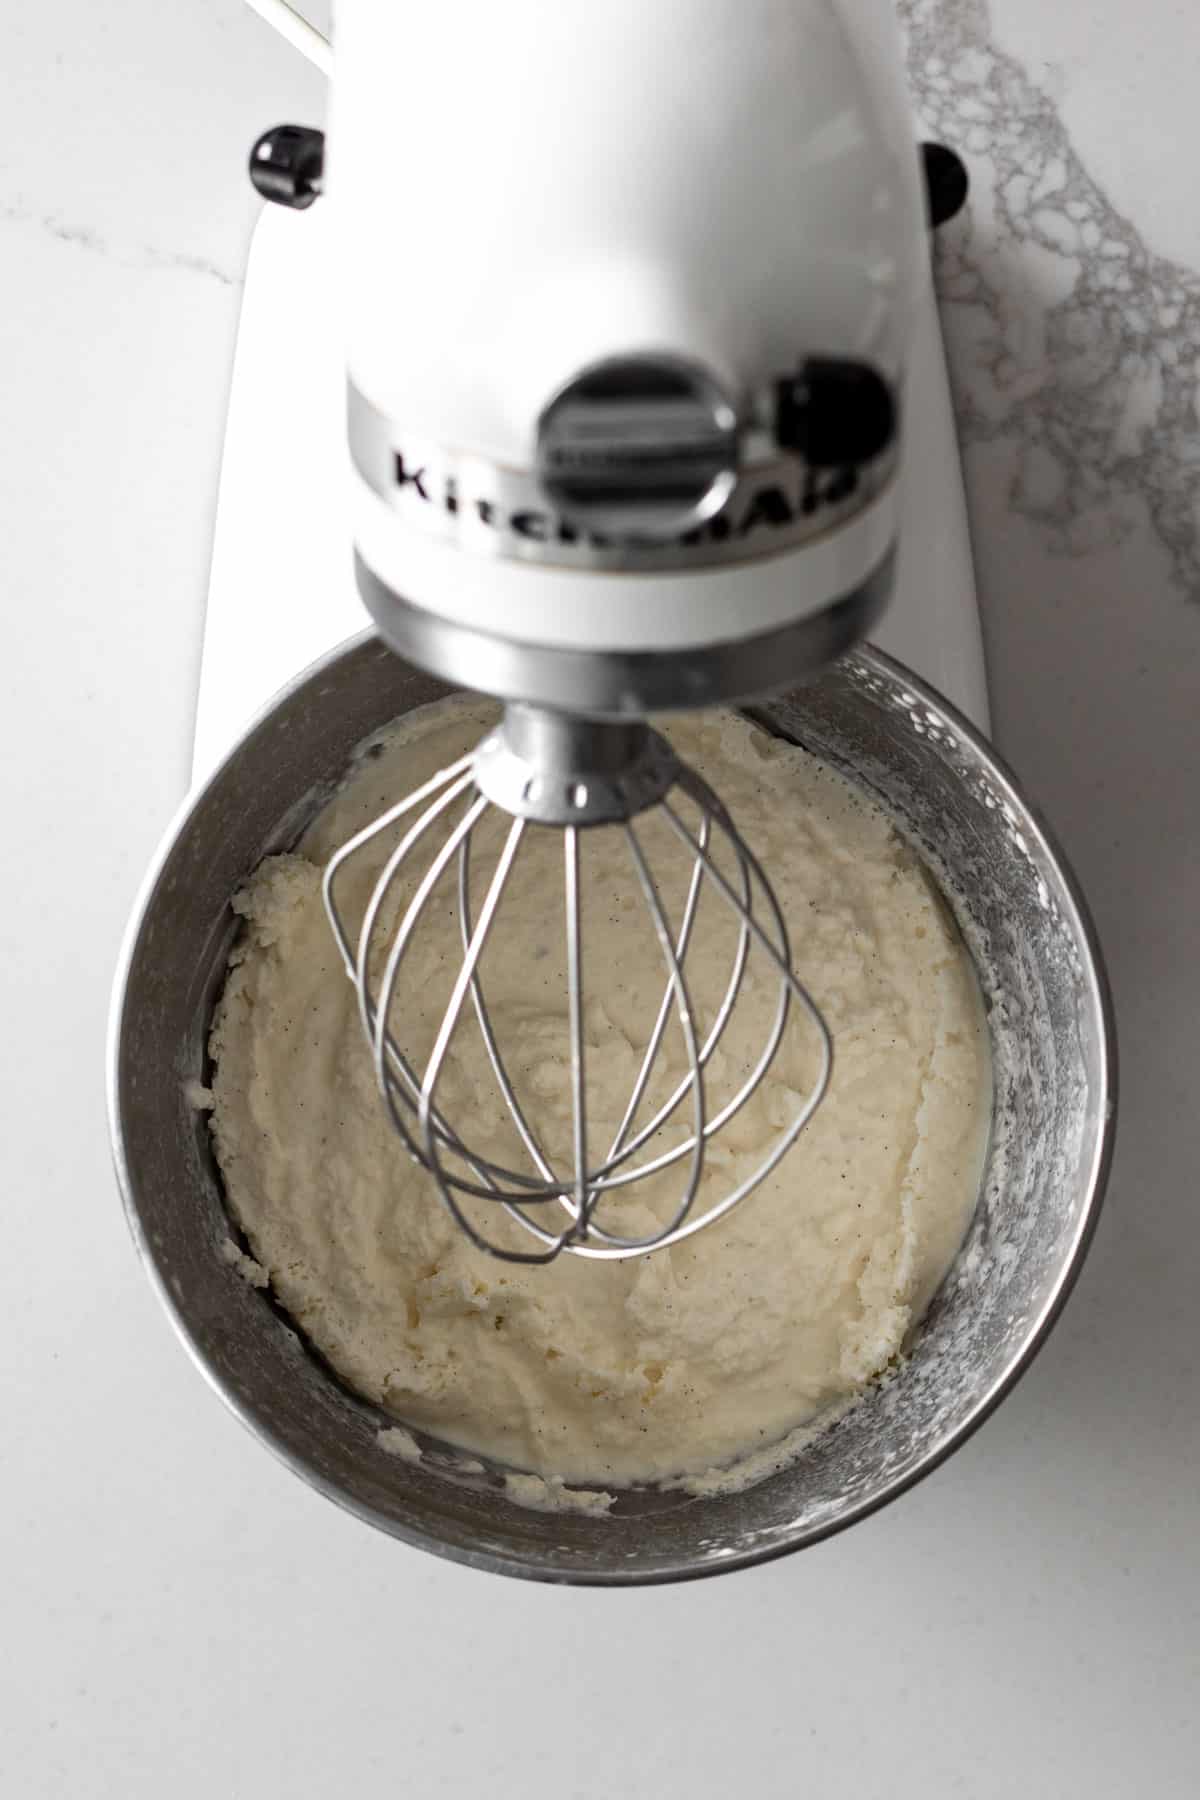 No-churn ice cream in a kitchen-aid mixer